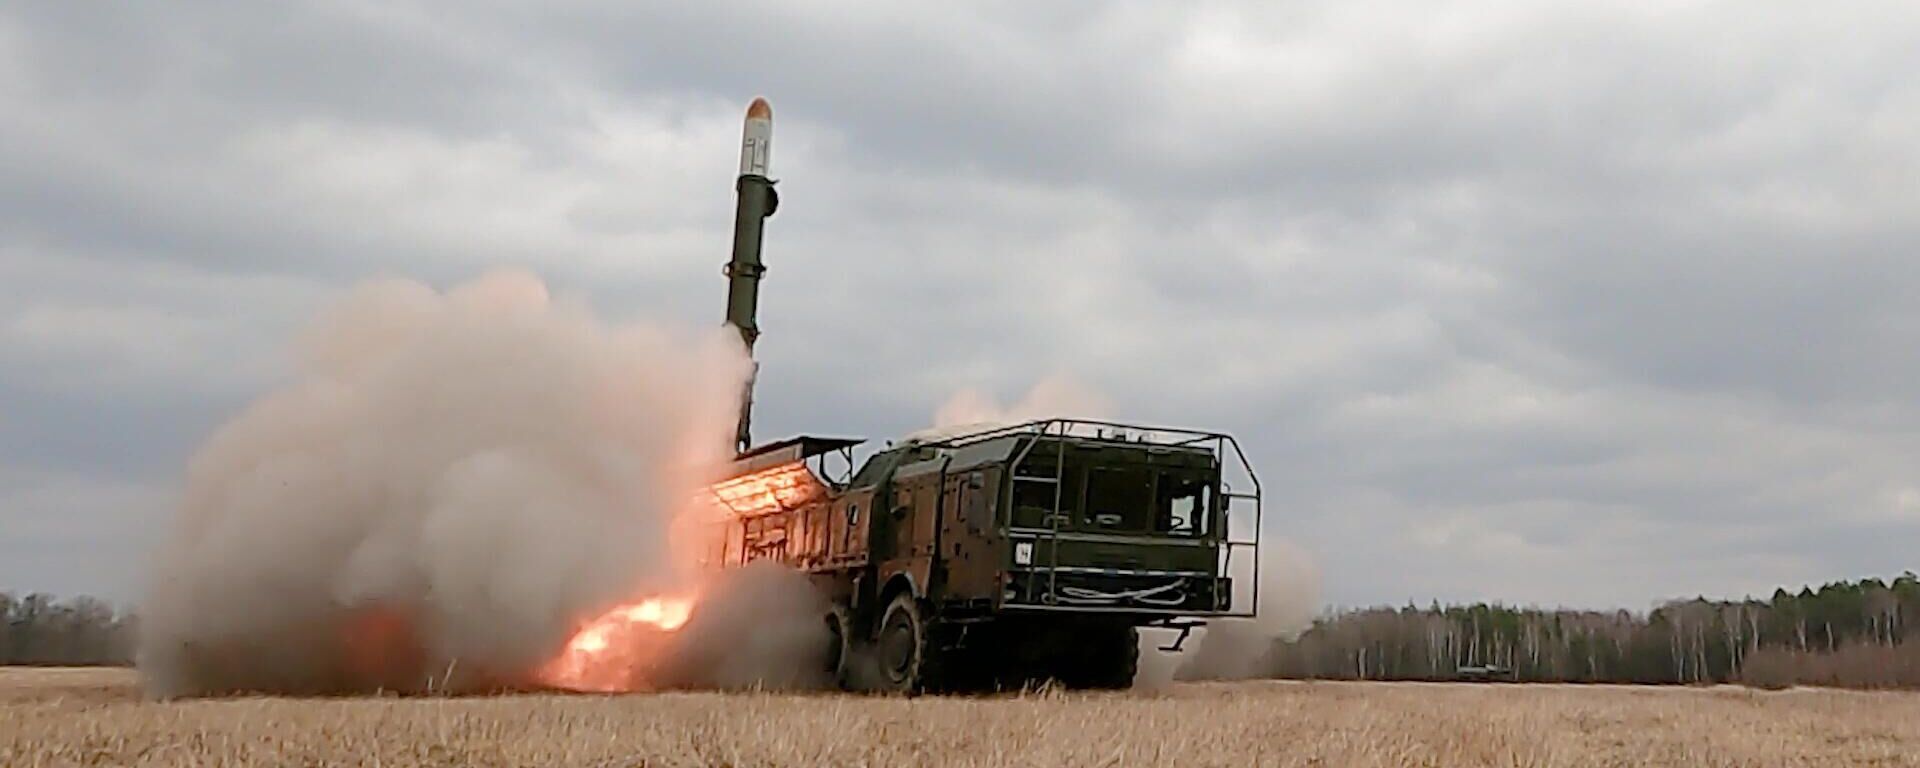 Удар оперативно-тактическим ракетным комплексом Искандер по объектам ВСУ на территории Украины - Sputnik Latvija, 1920, 28.04.2022